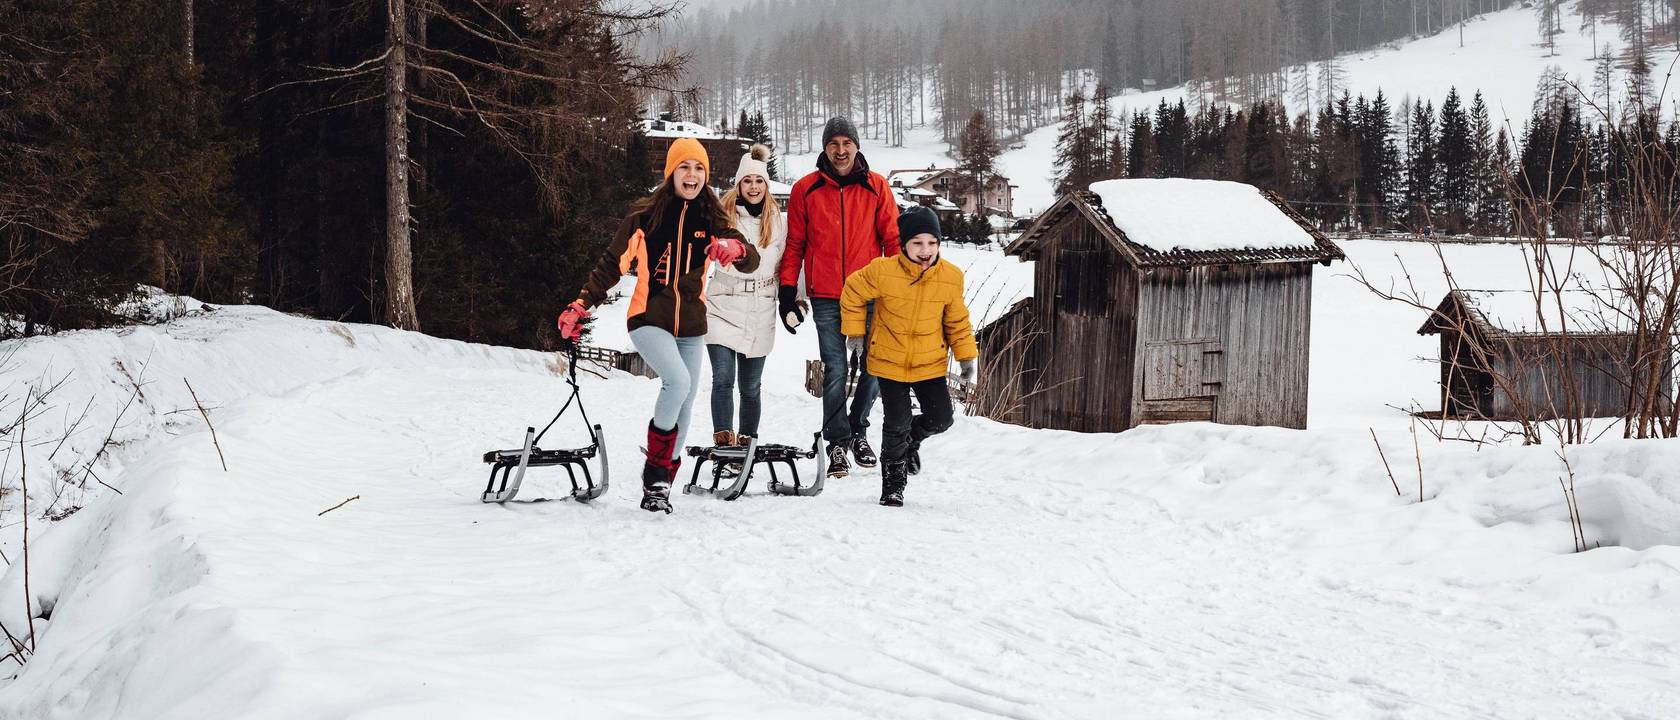 Vacanze invernali con bambini? Solo in Alto Adige!